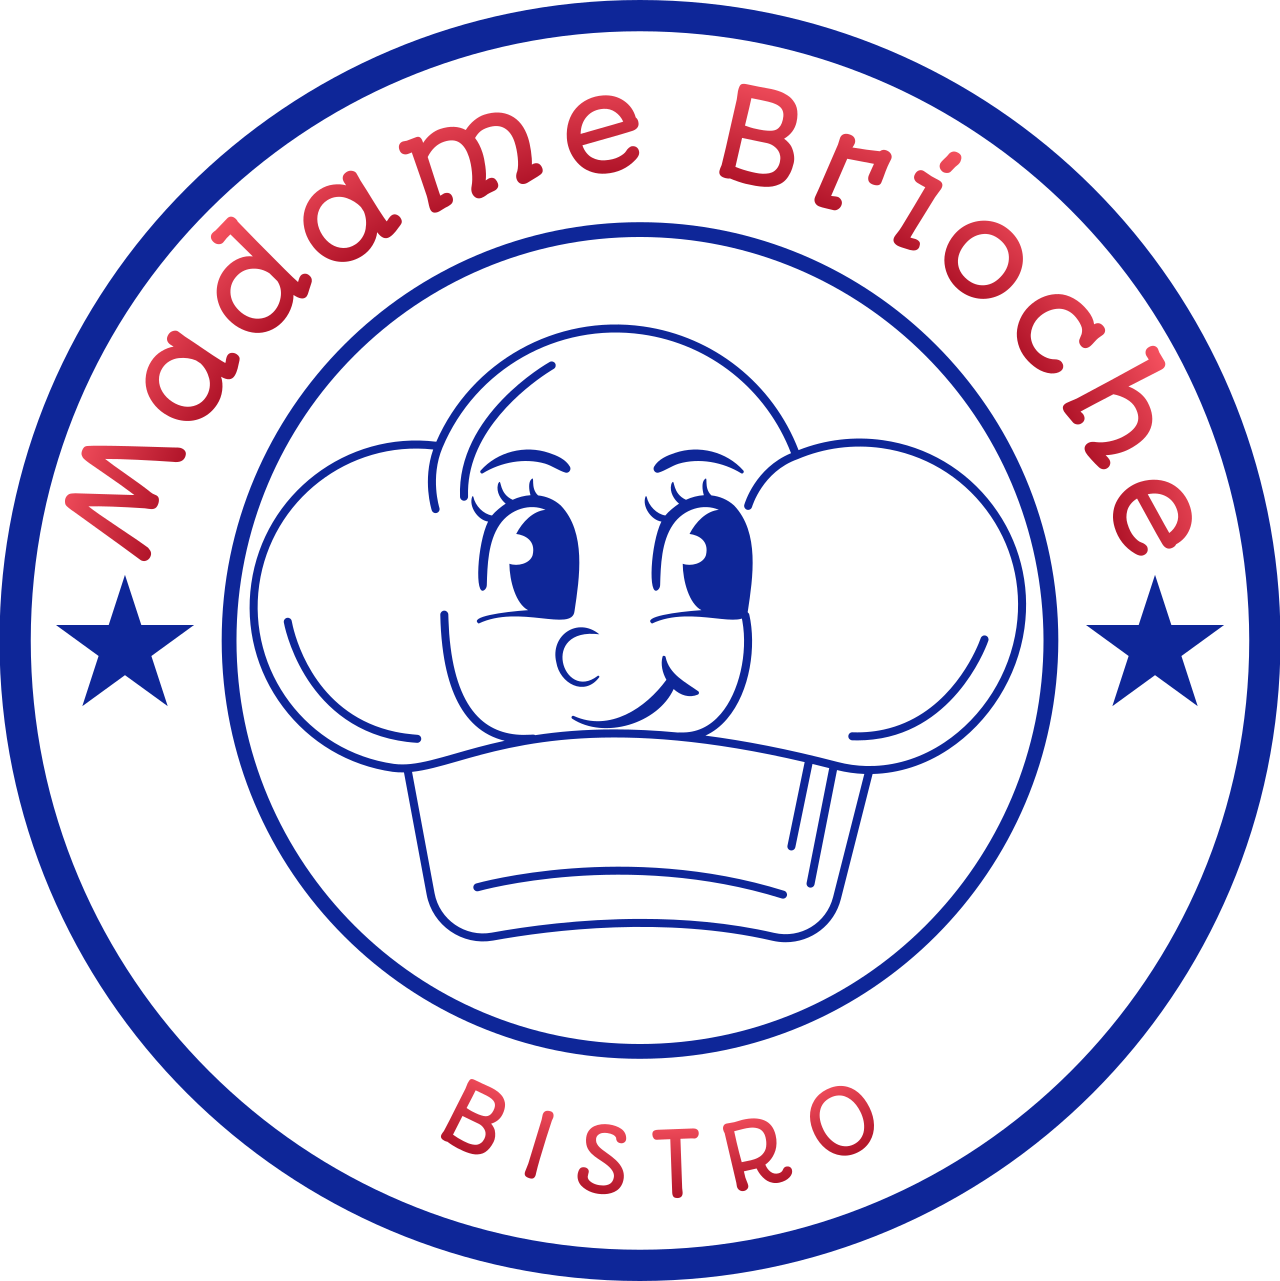 Madame Brioche 's logo